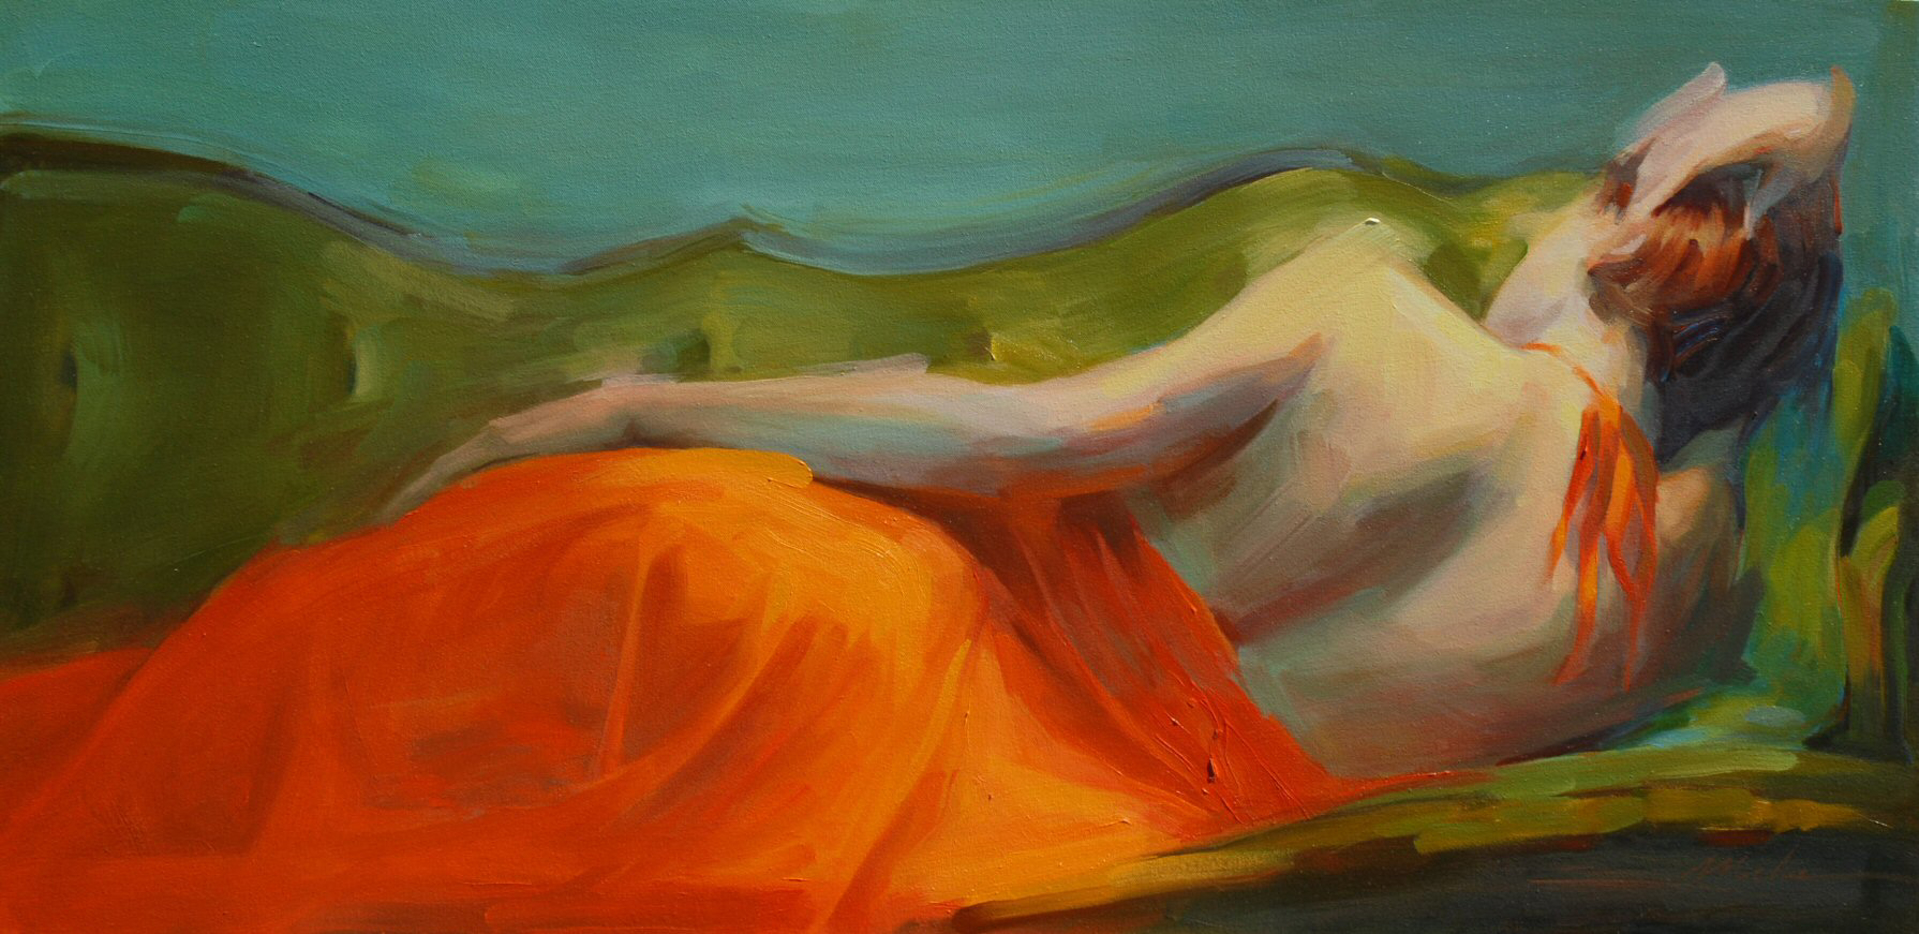 Tangerine by Michelle Torrez